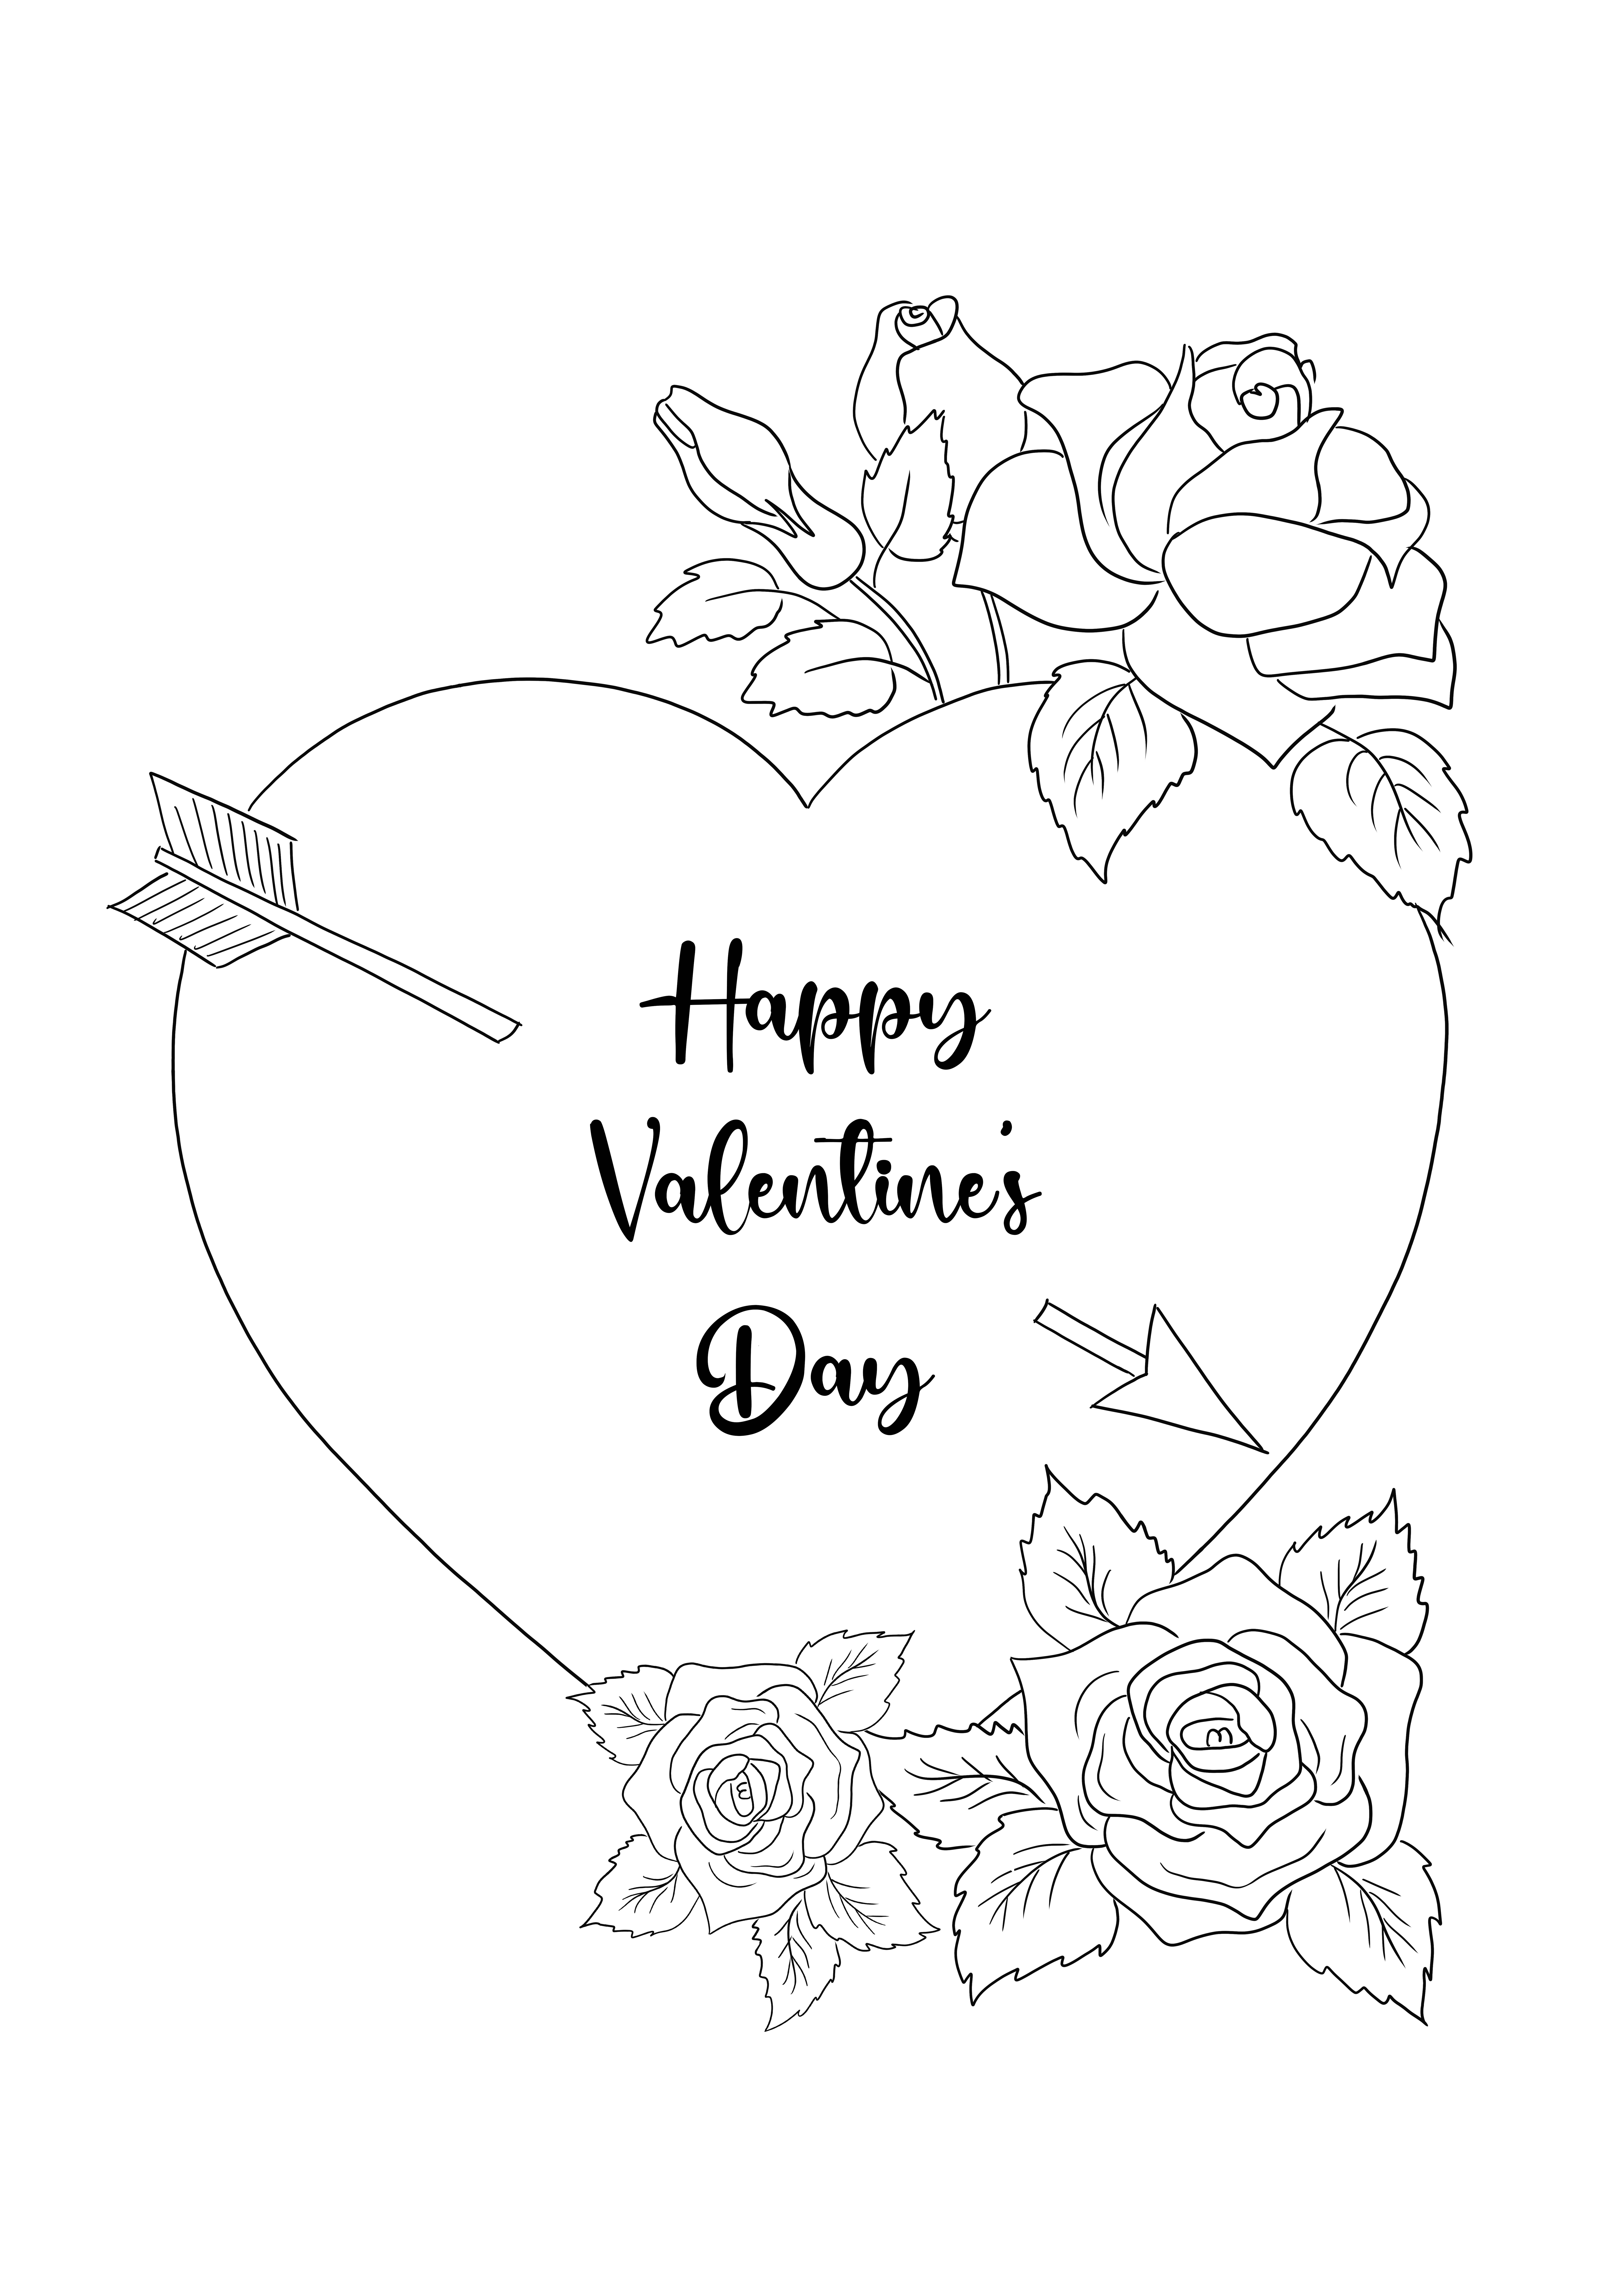 Tarjeta de feliz día de San Valentín para colorear para todos los amantes, pequeños o grandes para descargar gratis